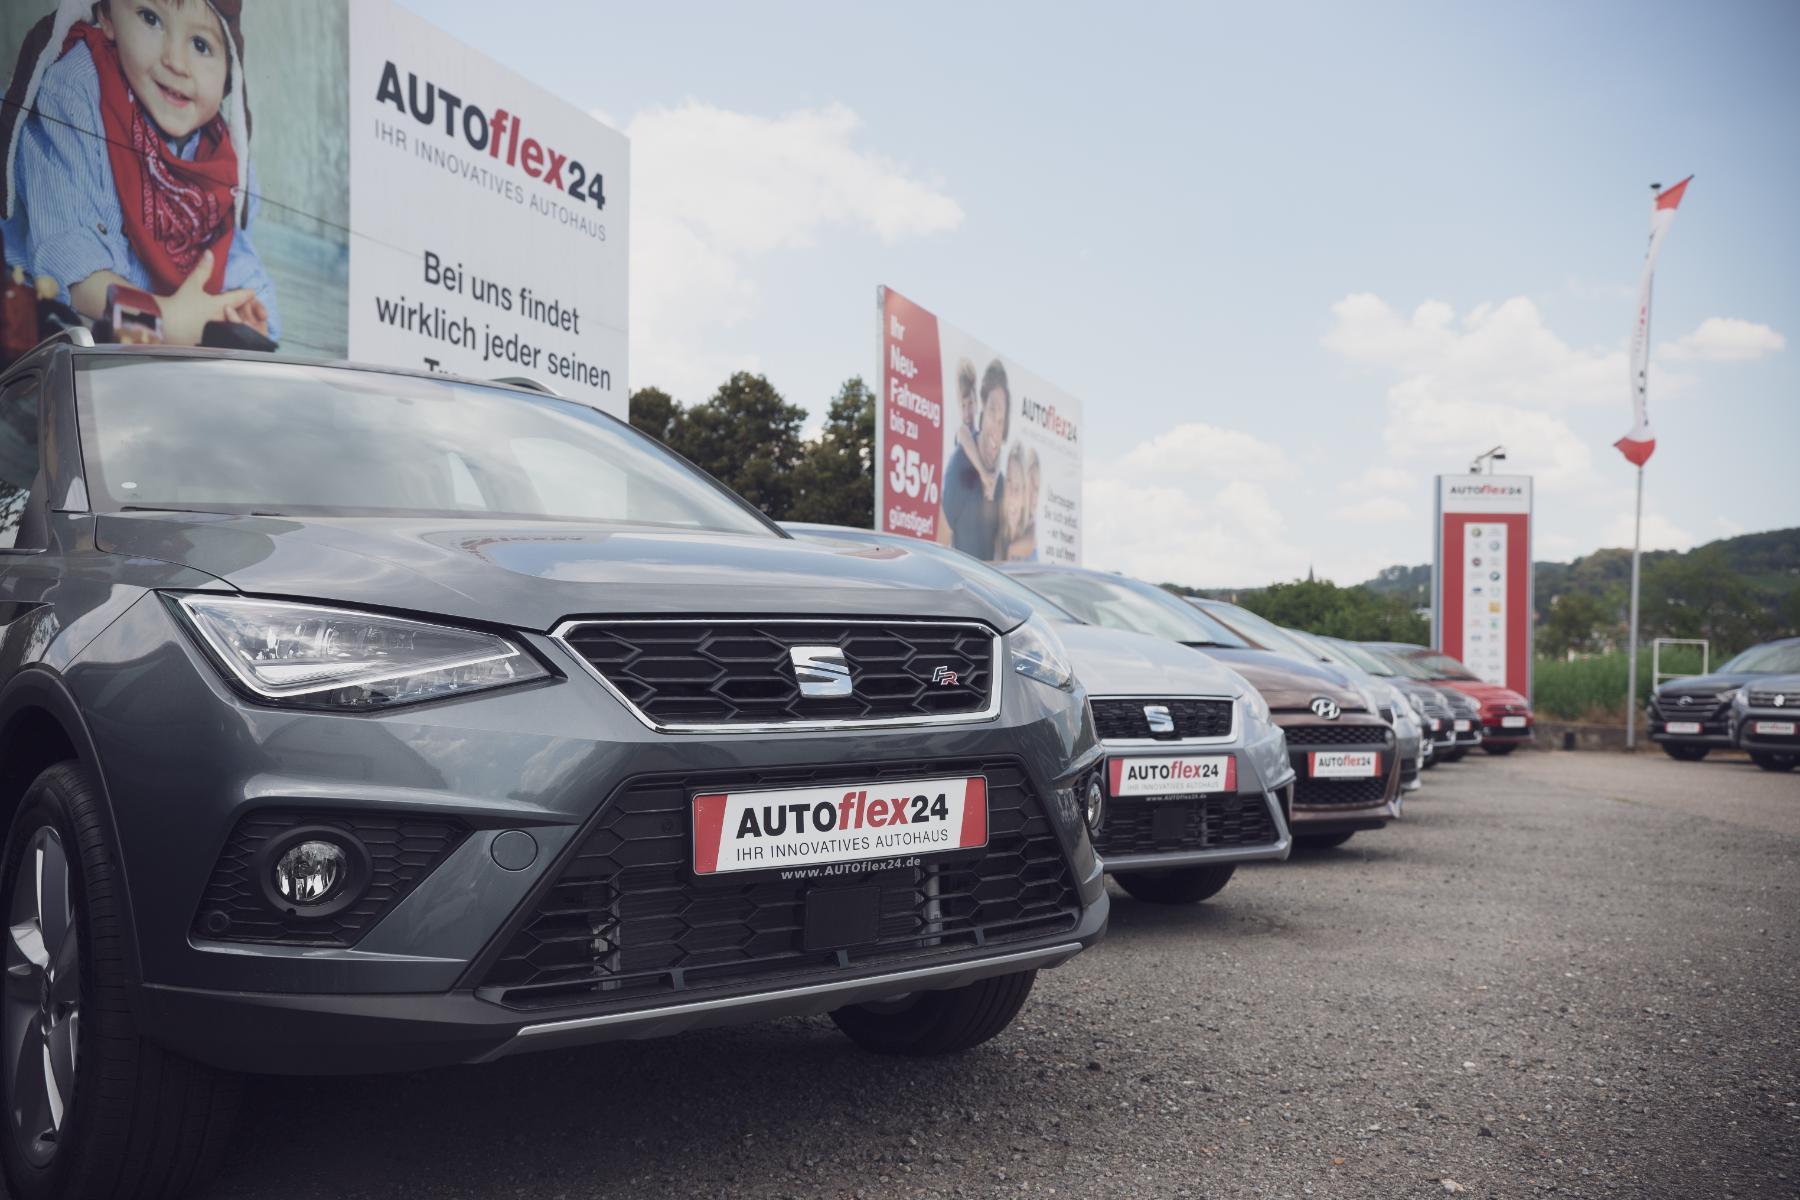 Autrado Lieferant - Autolfex24 EU-Fahrzeuge zu exklusiven Händlerpreisen